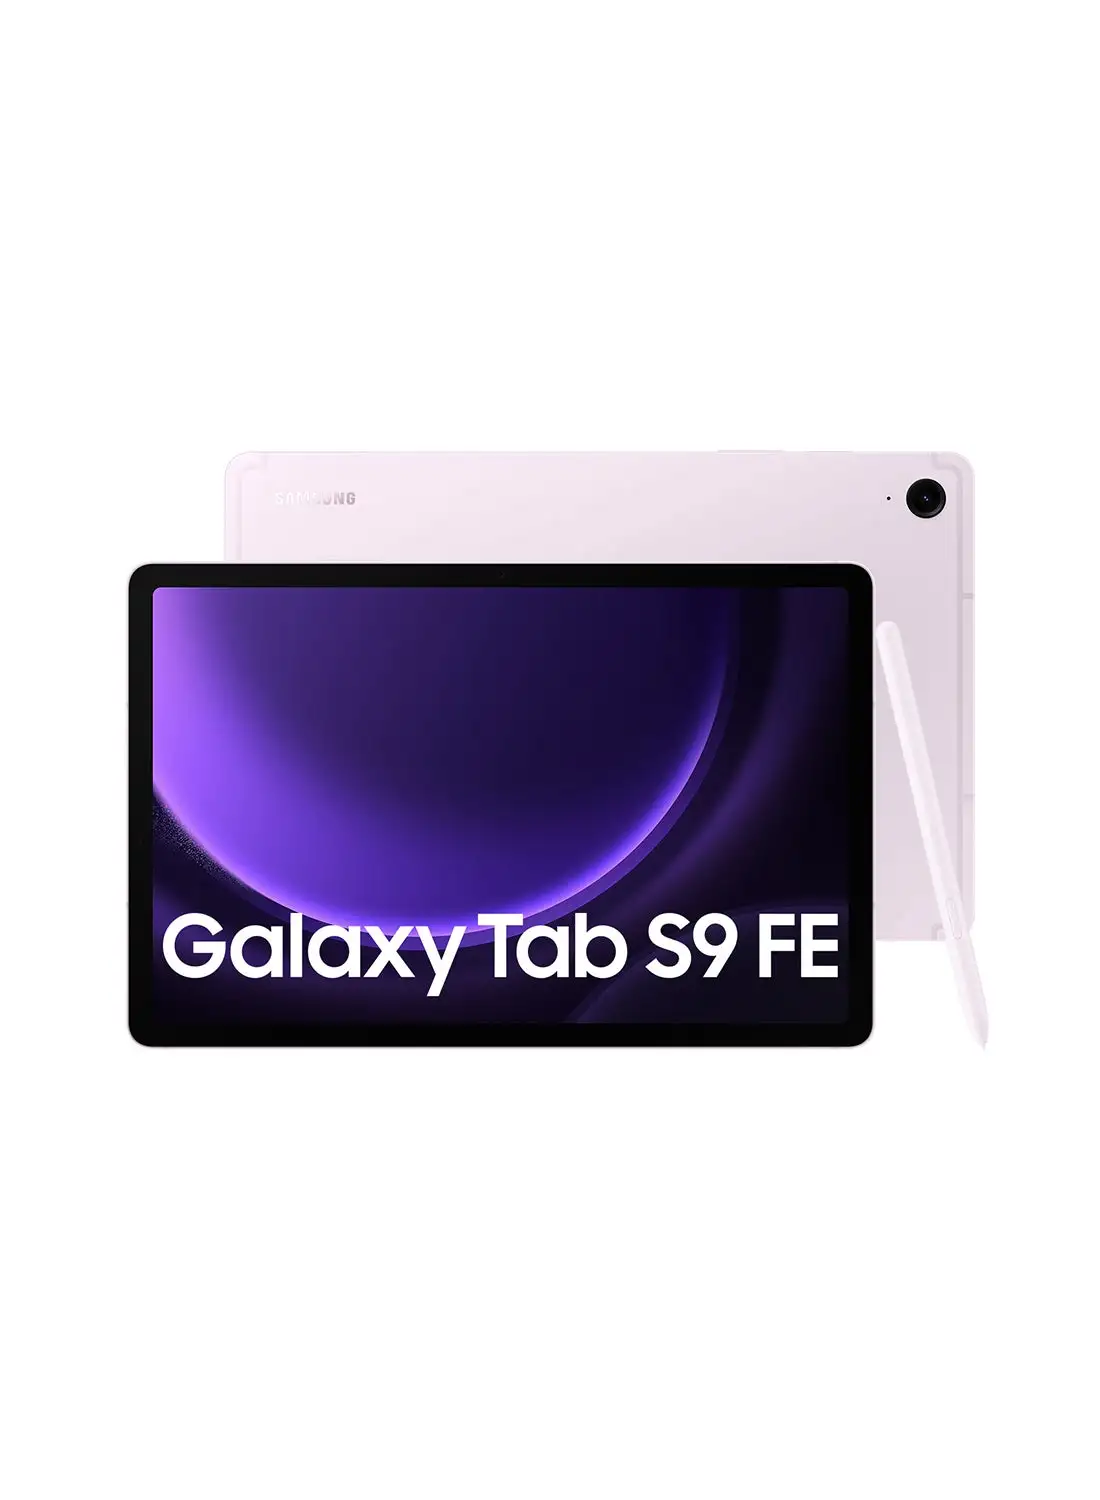 Samsung Galaxy Tab S9 FE Lavender 6GB RAM 128GB 5G - Middle East Version